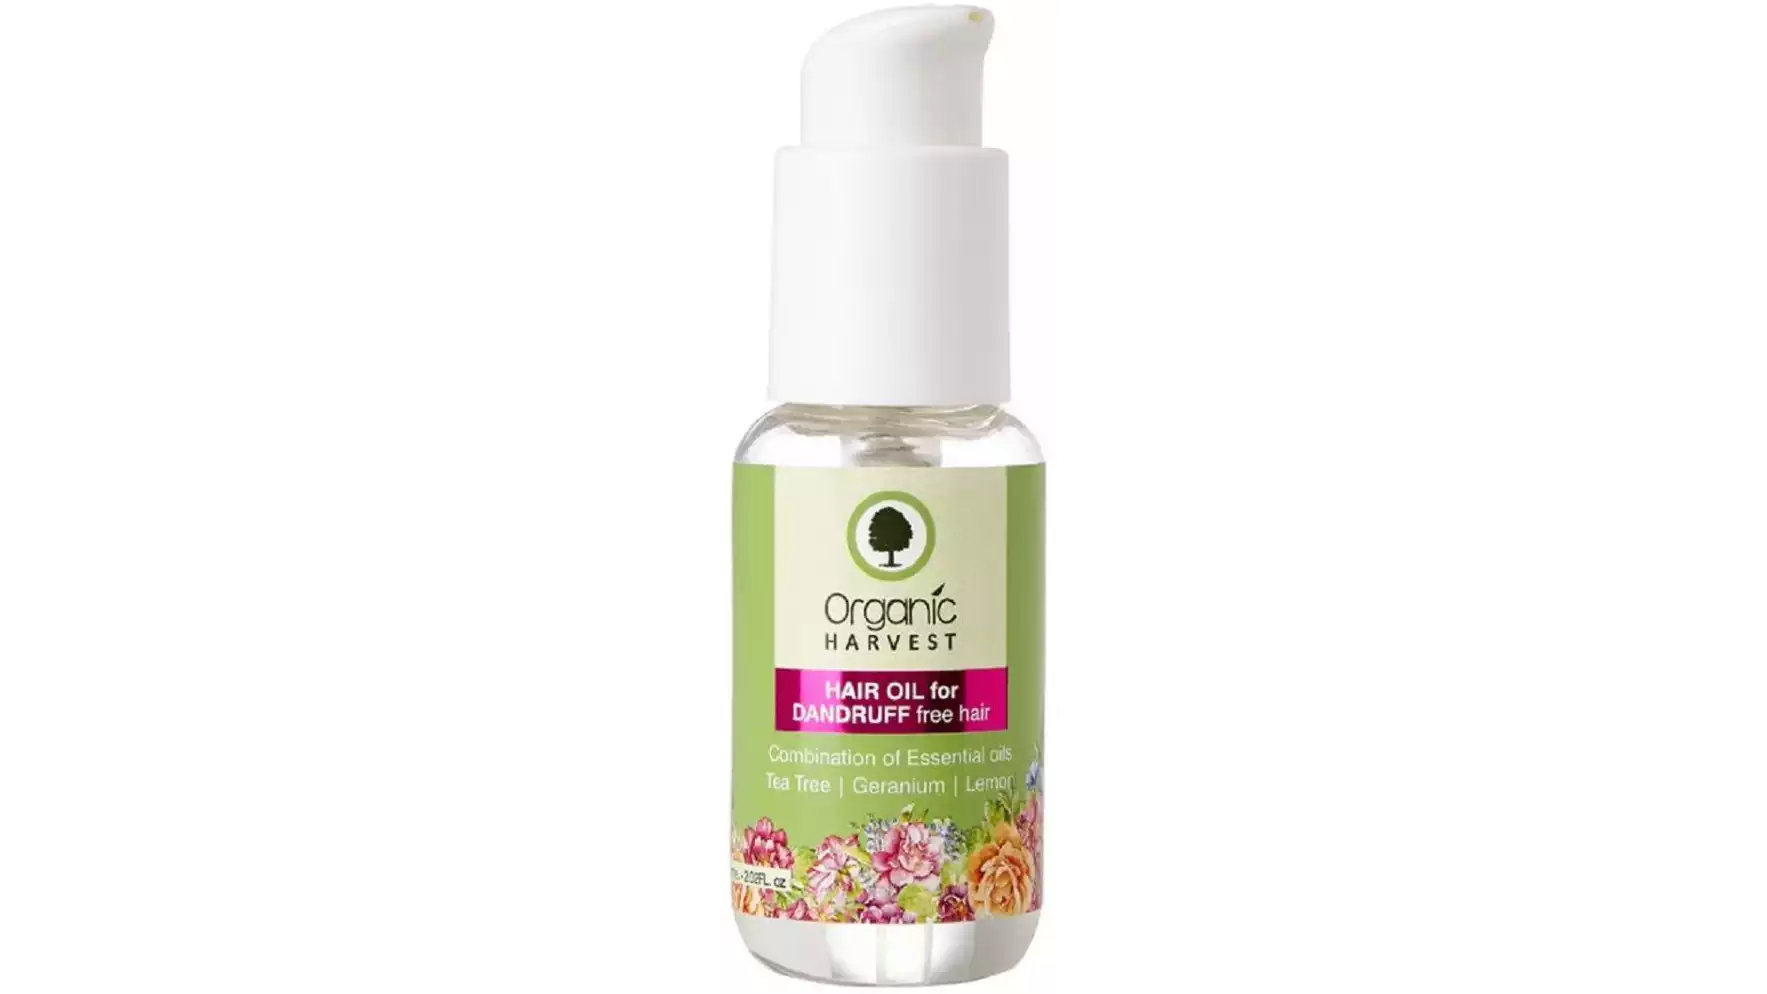 Organic Harvest Hair Oil For Dandruff Free Hair (50ml)